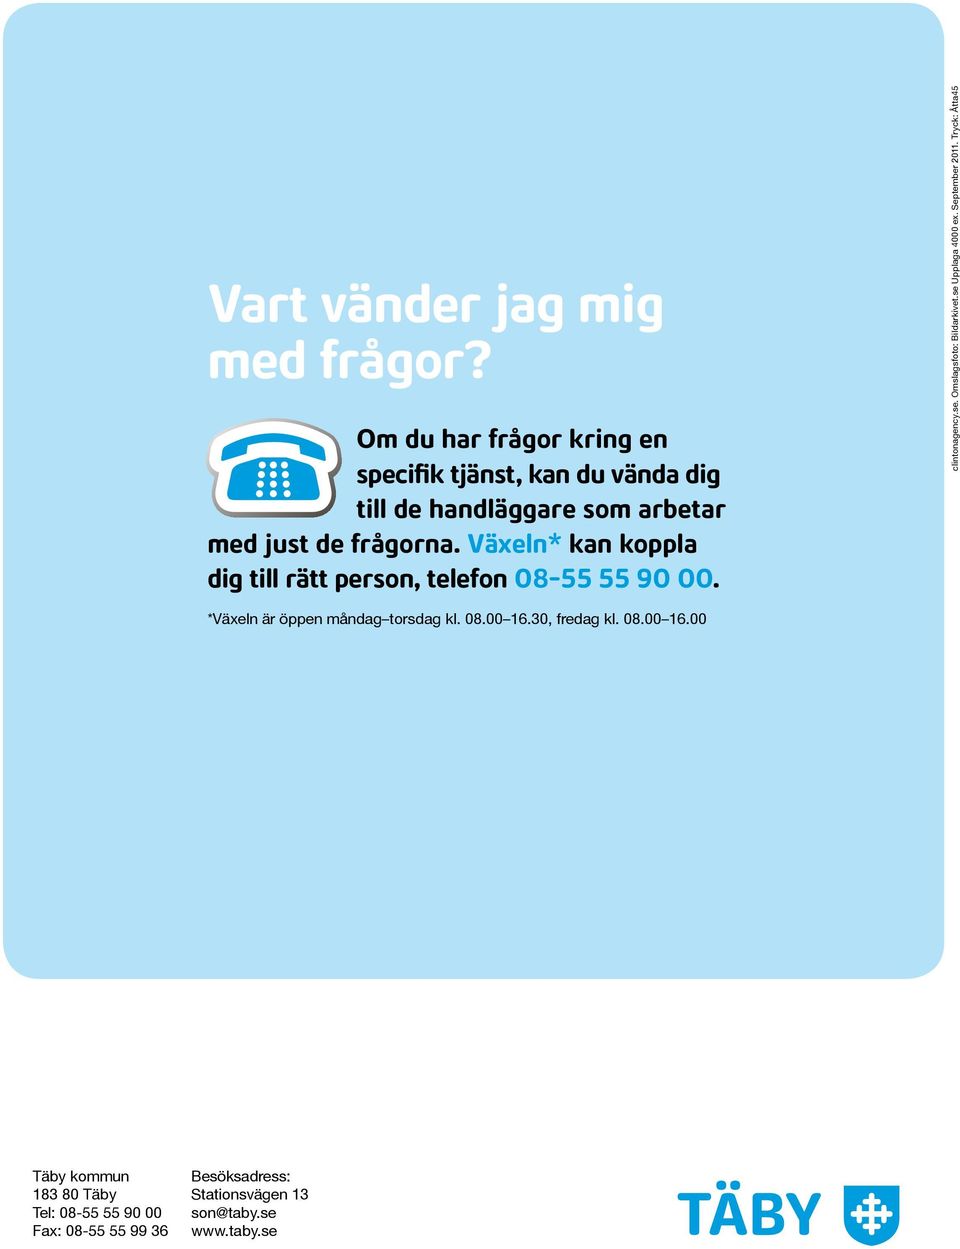 Växeln* kan koppla dig till rätt person, telefon 08-55 55 90 00. clintonagency.se. Omslagsfoto: Bildarkivet.